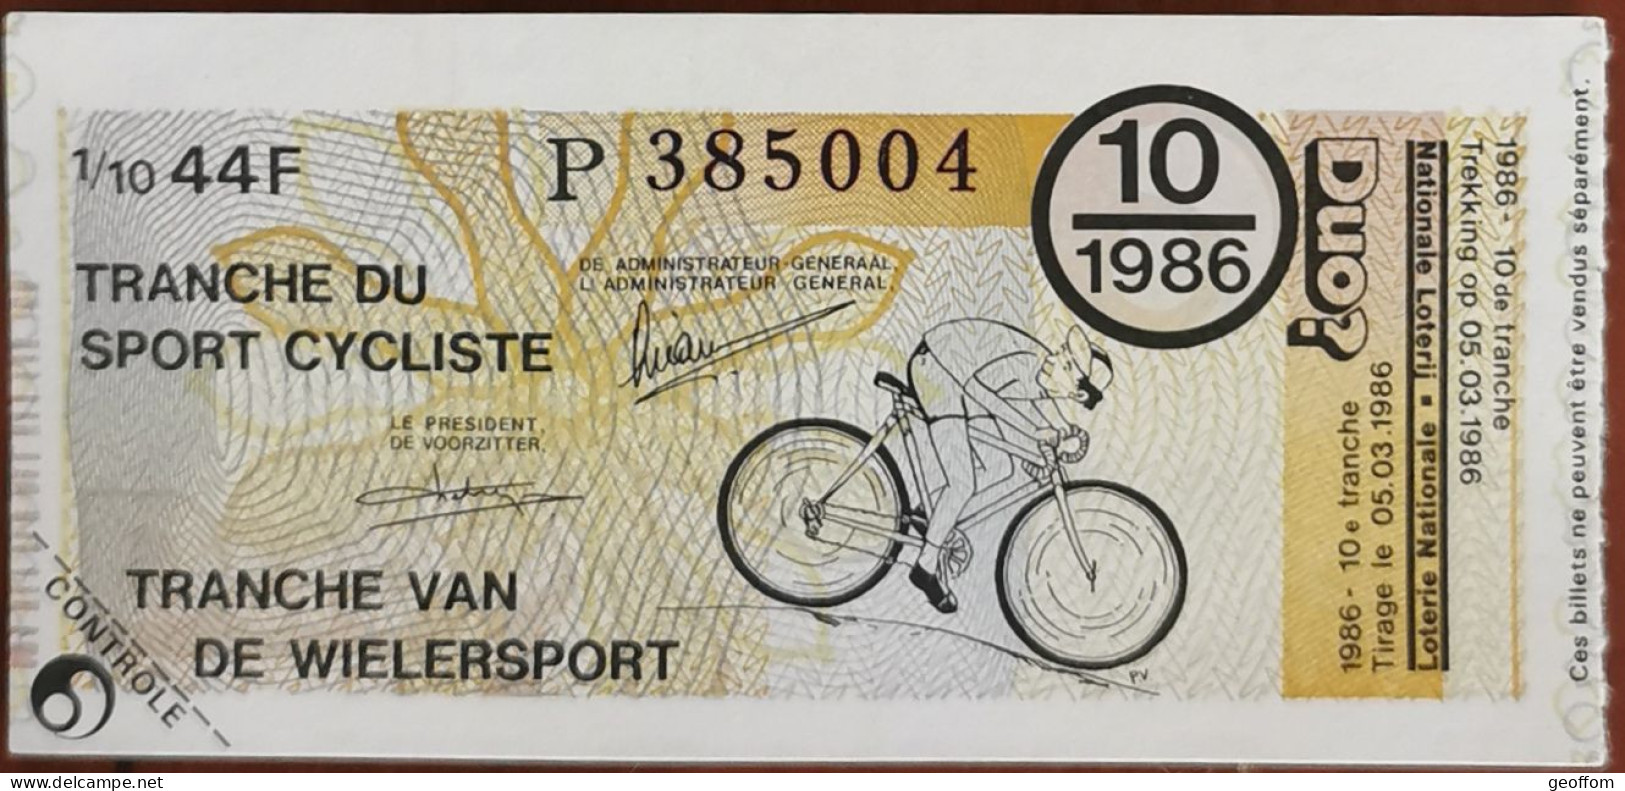 Billet De Loterie Nationale Belgique 1986 10e Tranche Du Sport Cycliste - 5-3-1986 - Biglietti Della Lotteria